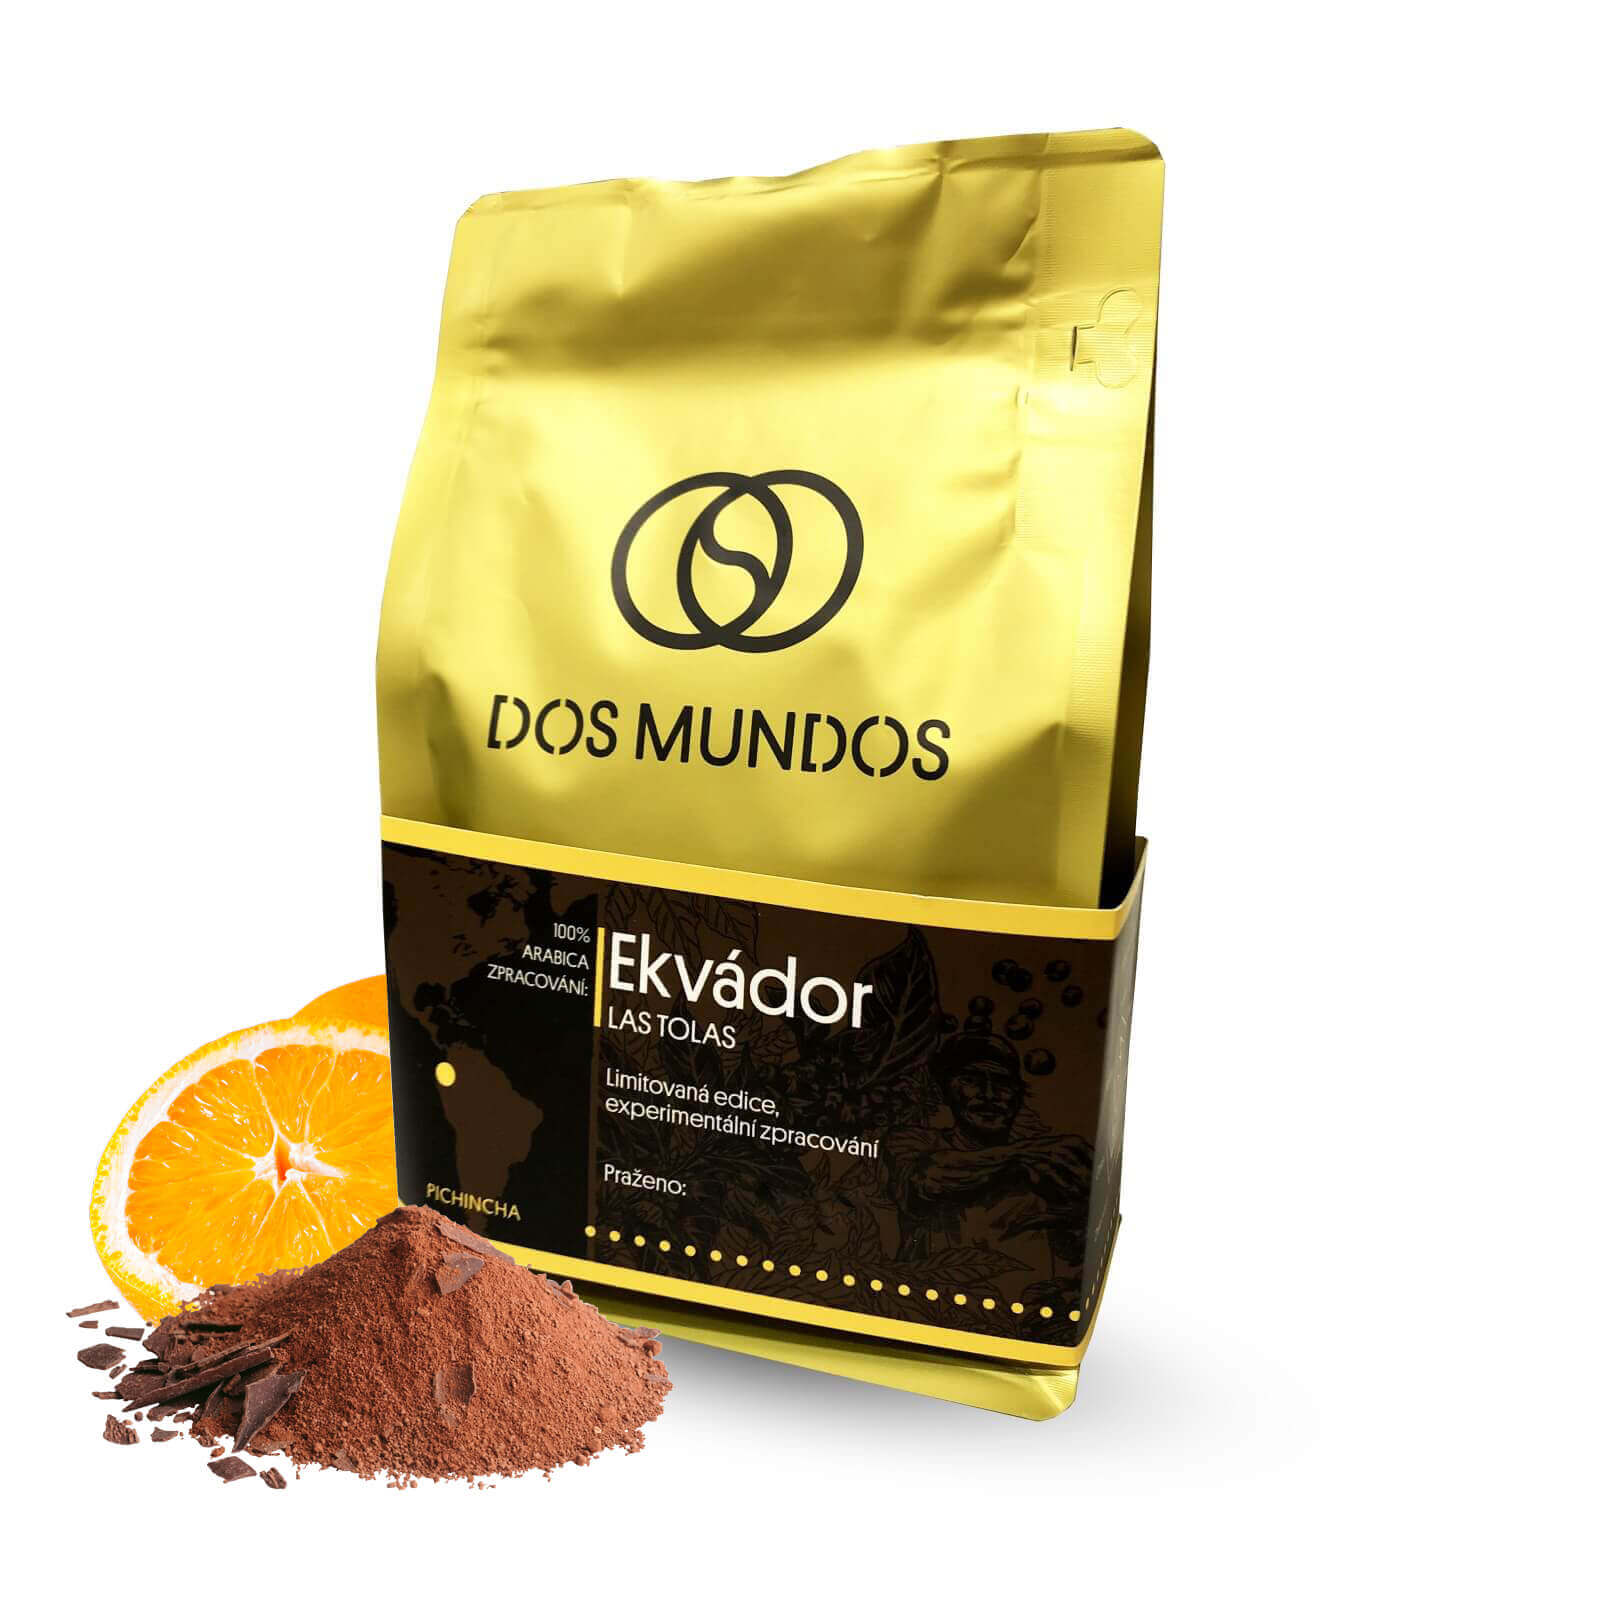 Výběrová káva Dos Mundos Ekvádor LAS TOLAS - limitovaná odrůda java